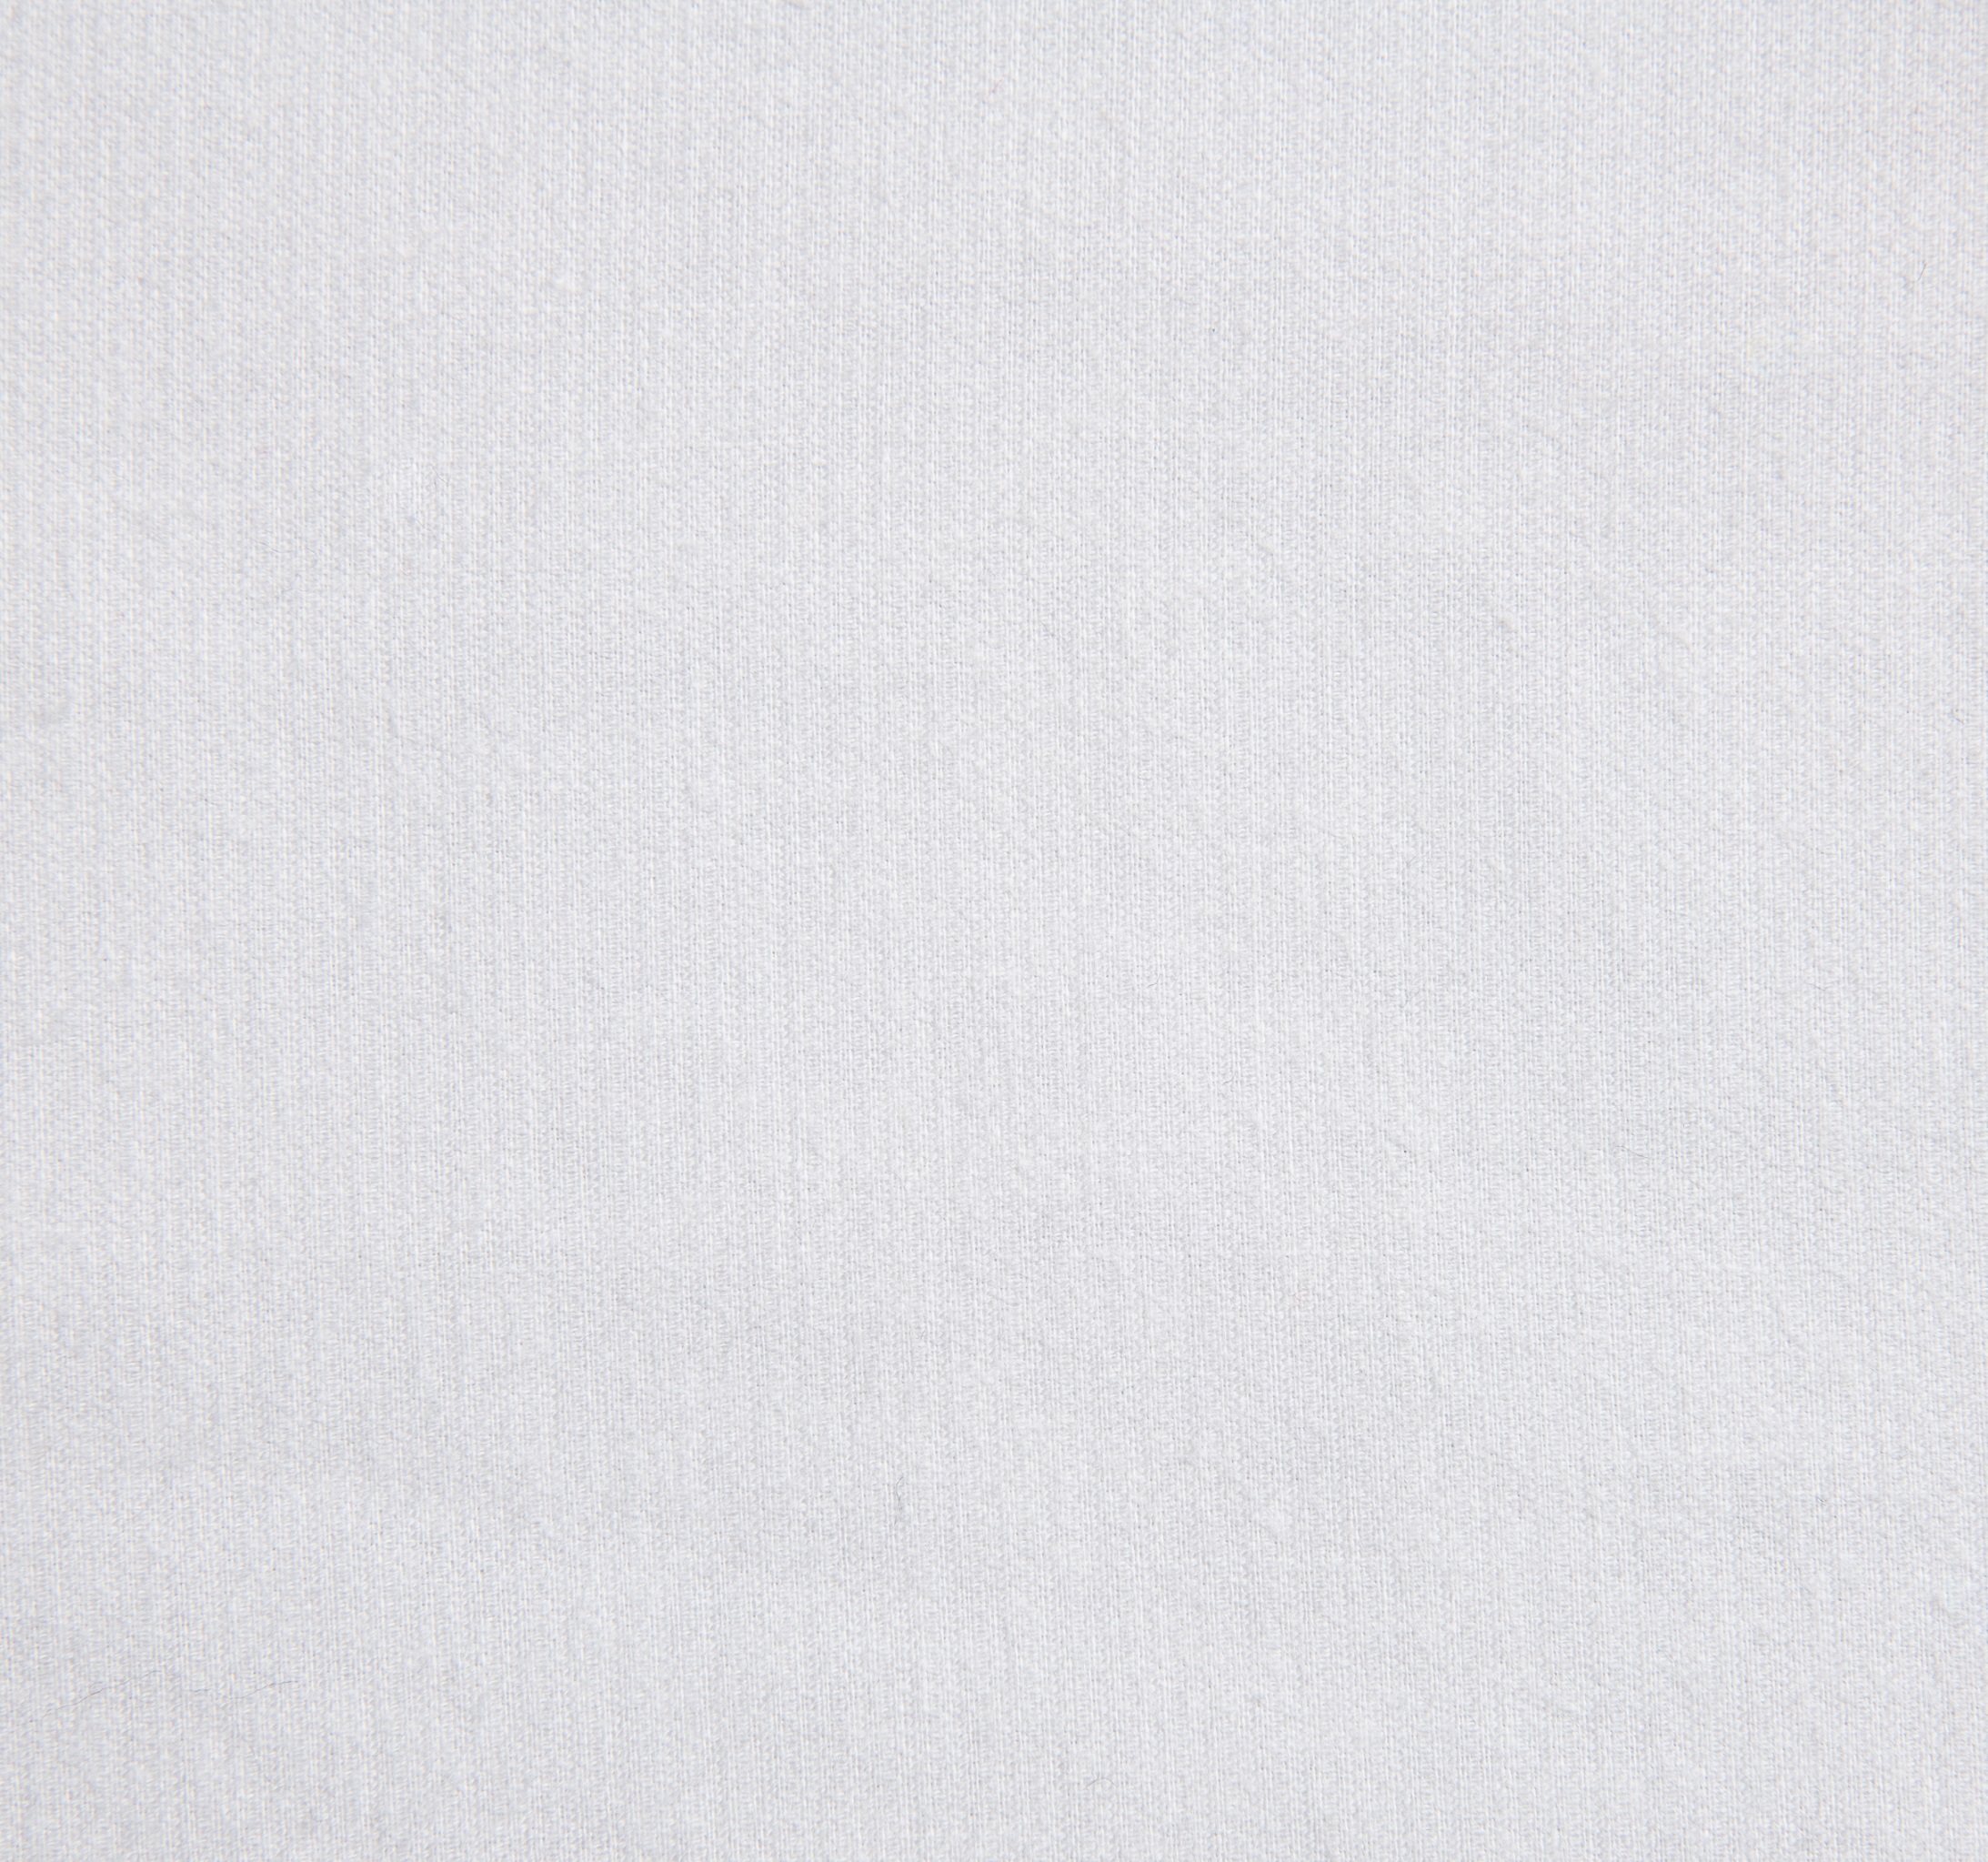 N14.0 - White plain corduroy fabric 100% cotton